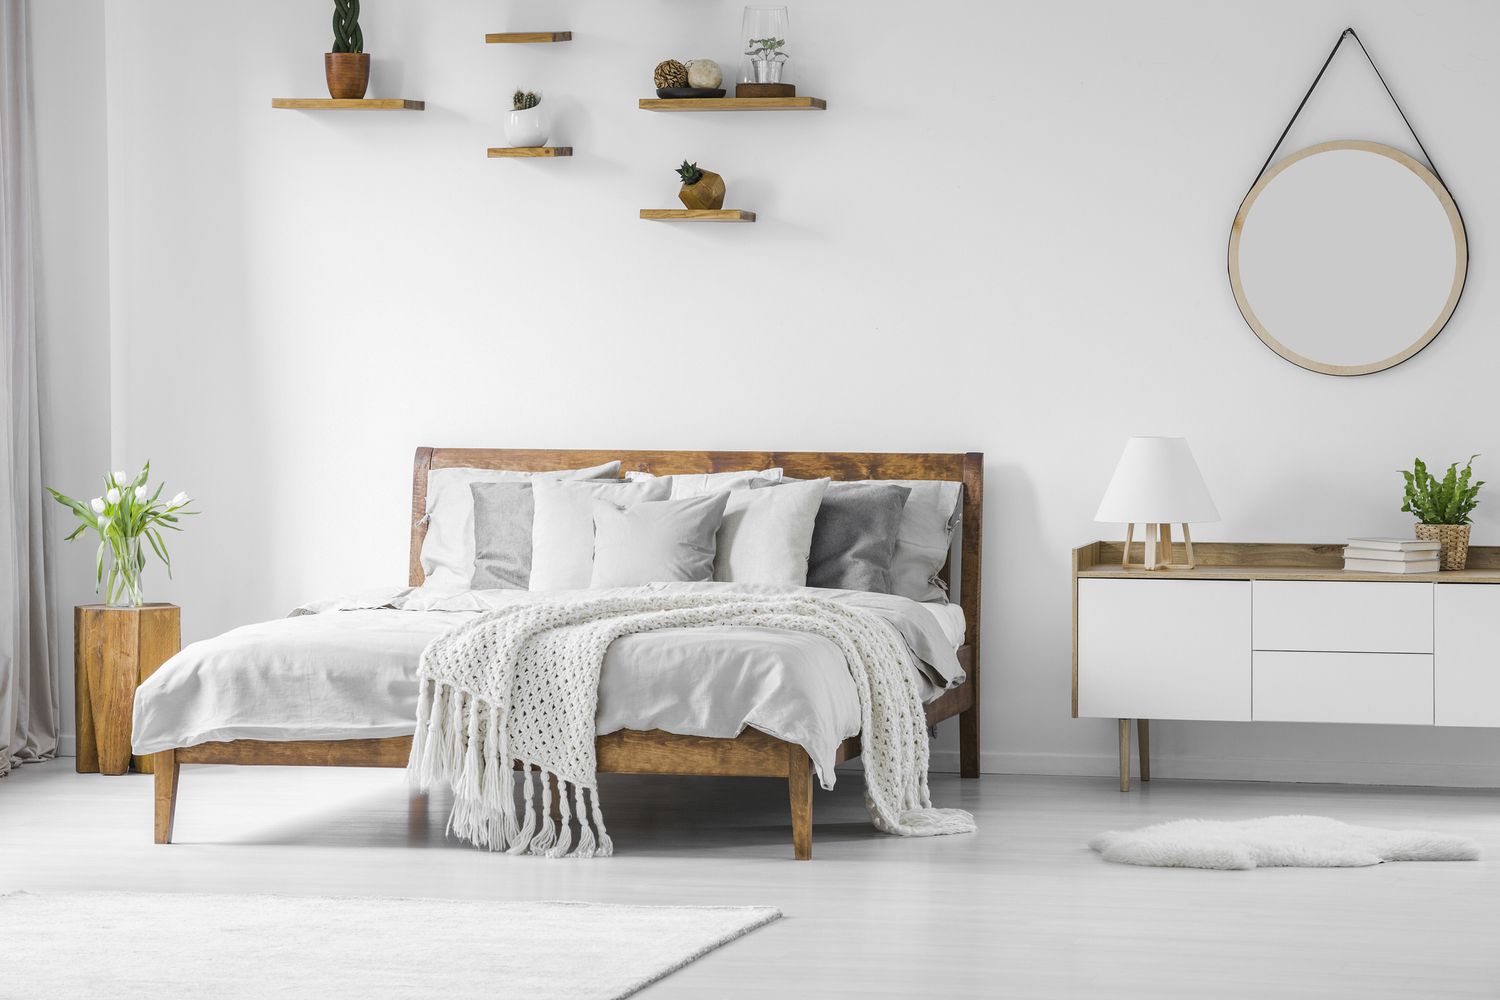 Grand lit confortable en bois avec linge, oreillers et couverture, table de nuit à côté et miroir rond suspendu sur un mur blanc dans un intérieur de chambre à coucher lumineux.